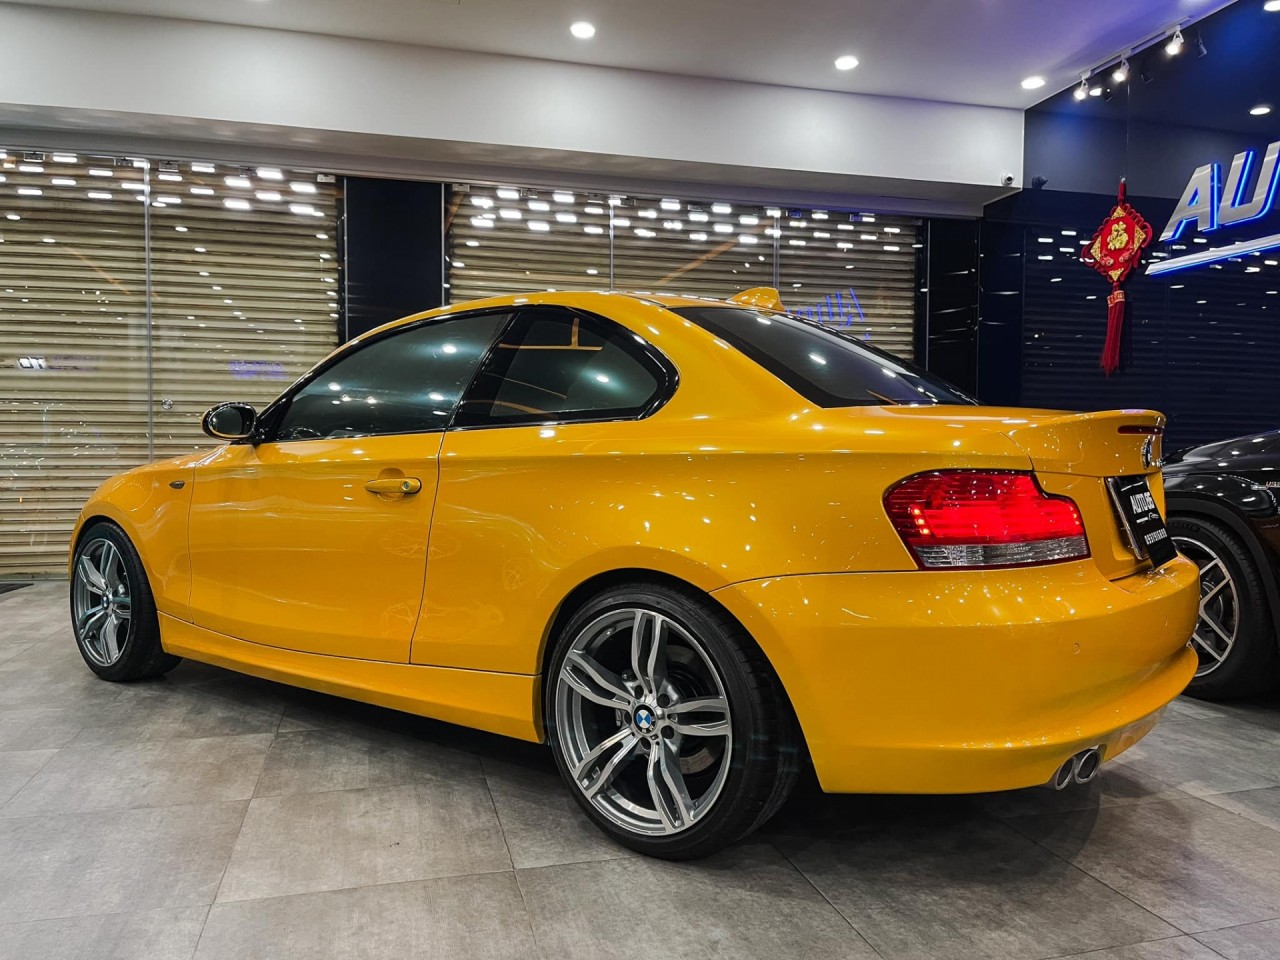 Hàng hiếm 'BMW128i Coupe' lên sàn với giá 790 triệu đồng